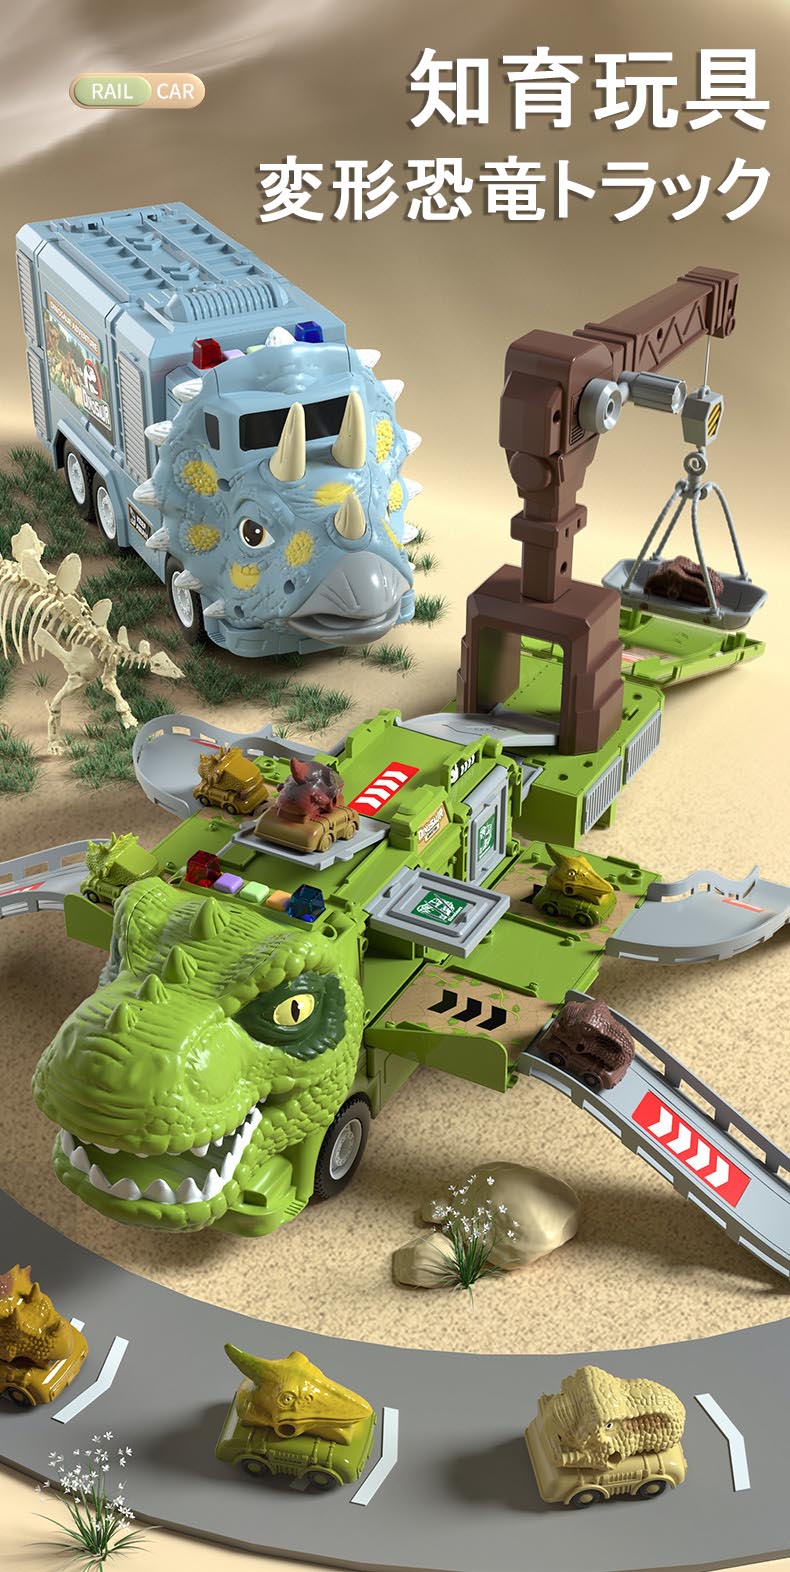 【送料無料】恐竜 トラック おもちゃ 車 変形 分解 知育玩具 送料無料 ライト付き 音楽付き 恐竜車 変形車 玩具 3歳 4歳 5歳 6歳以上 3～12歳 子供 男の子 女の子 進学祝い 誕生日 クリスマス 贈り物 プレゼント 2